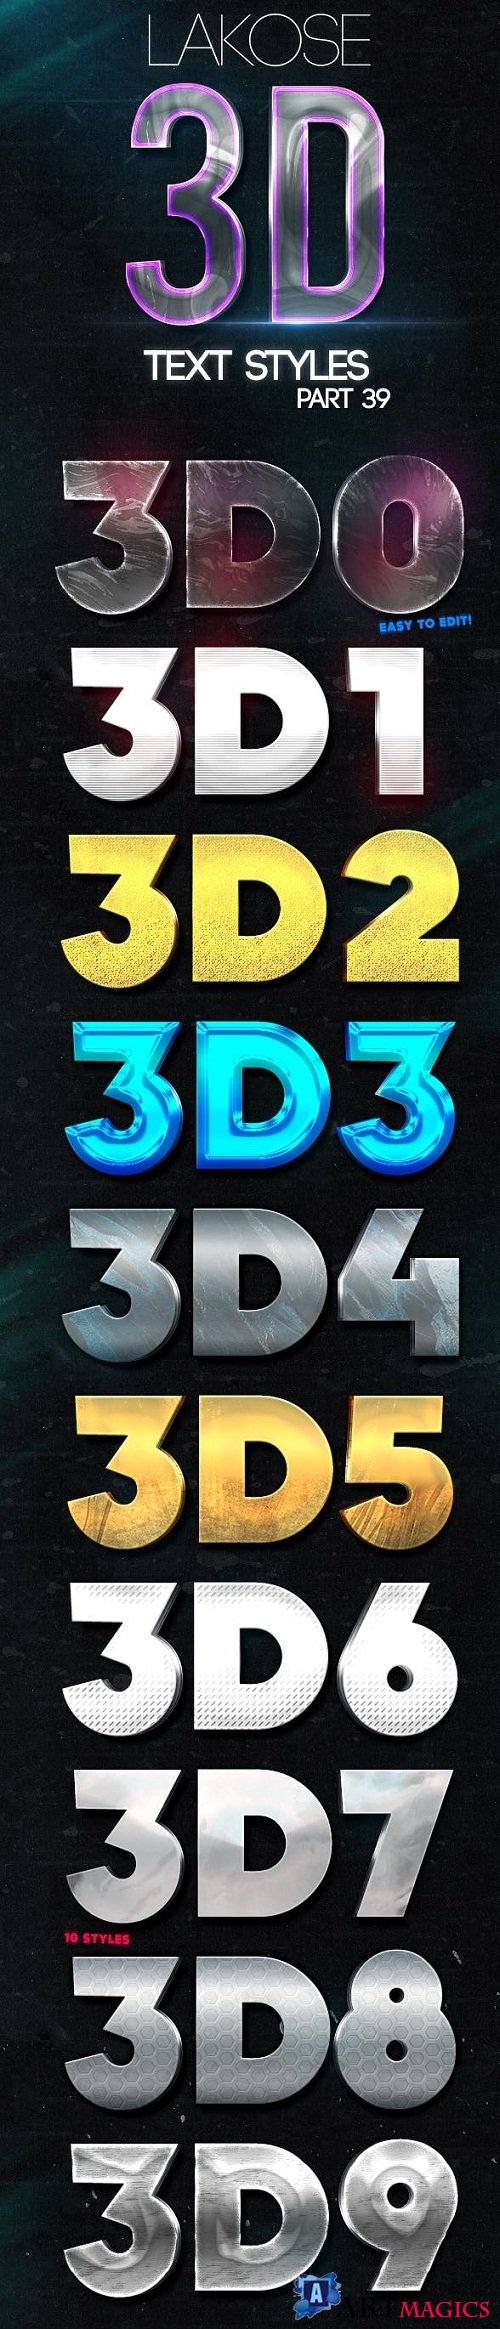 Lakose 3D Text Styles Part 39 - 22644984